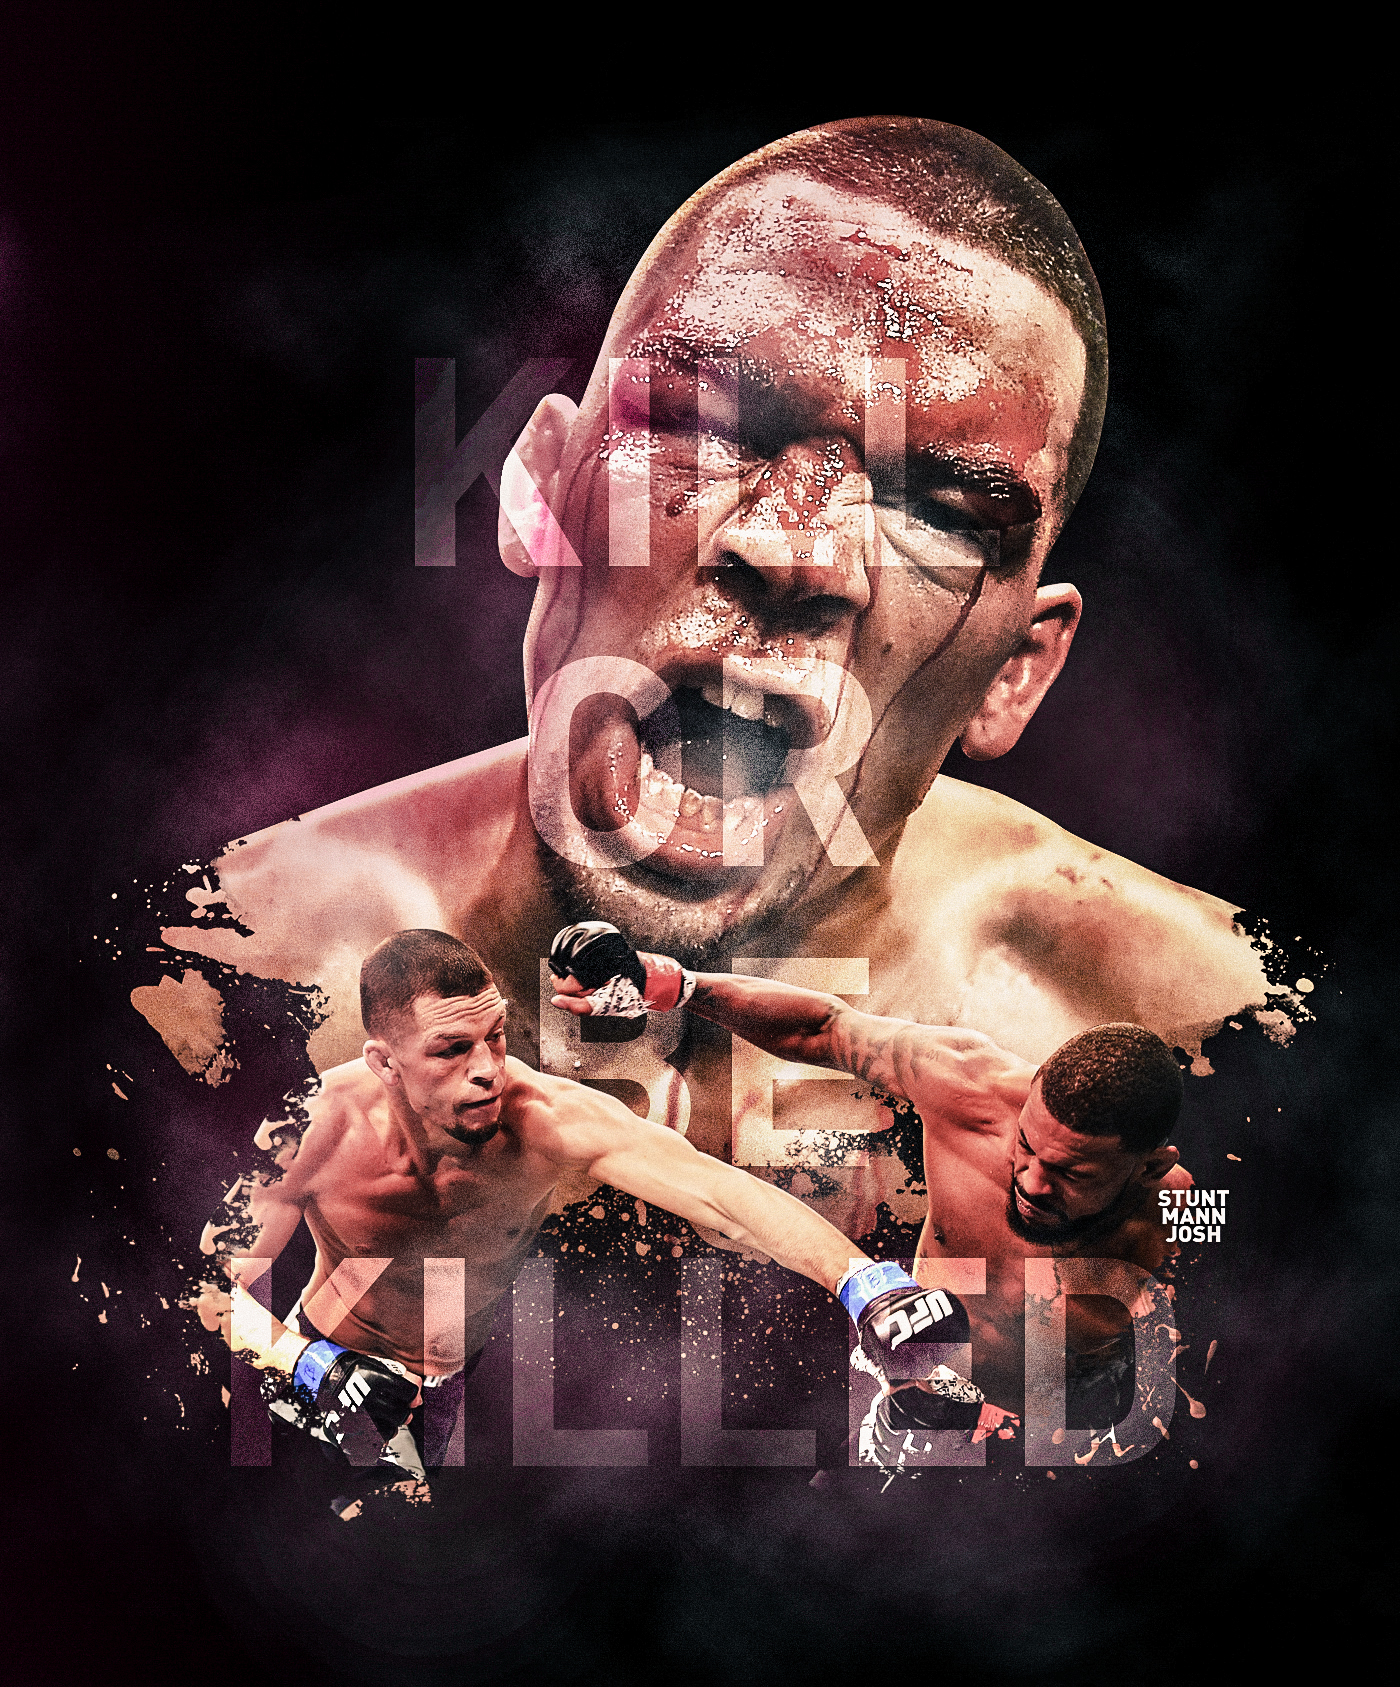 Conor McGregor nate diaz UFC mixed Mixed martial arts combat sports Boxing sports sports poster